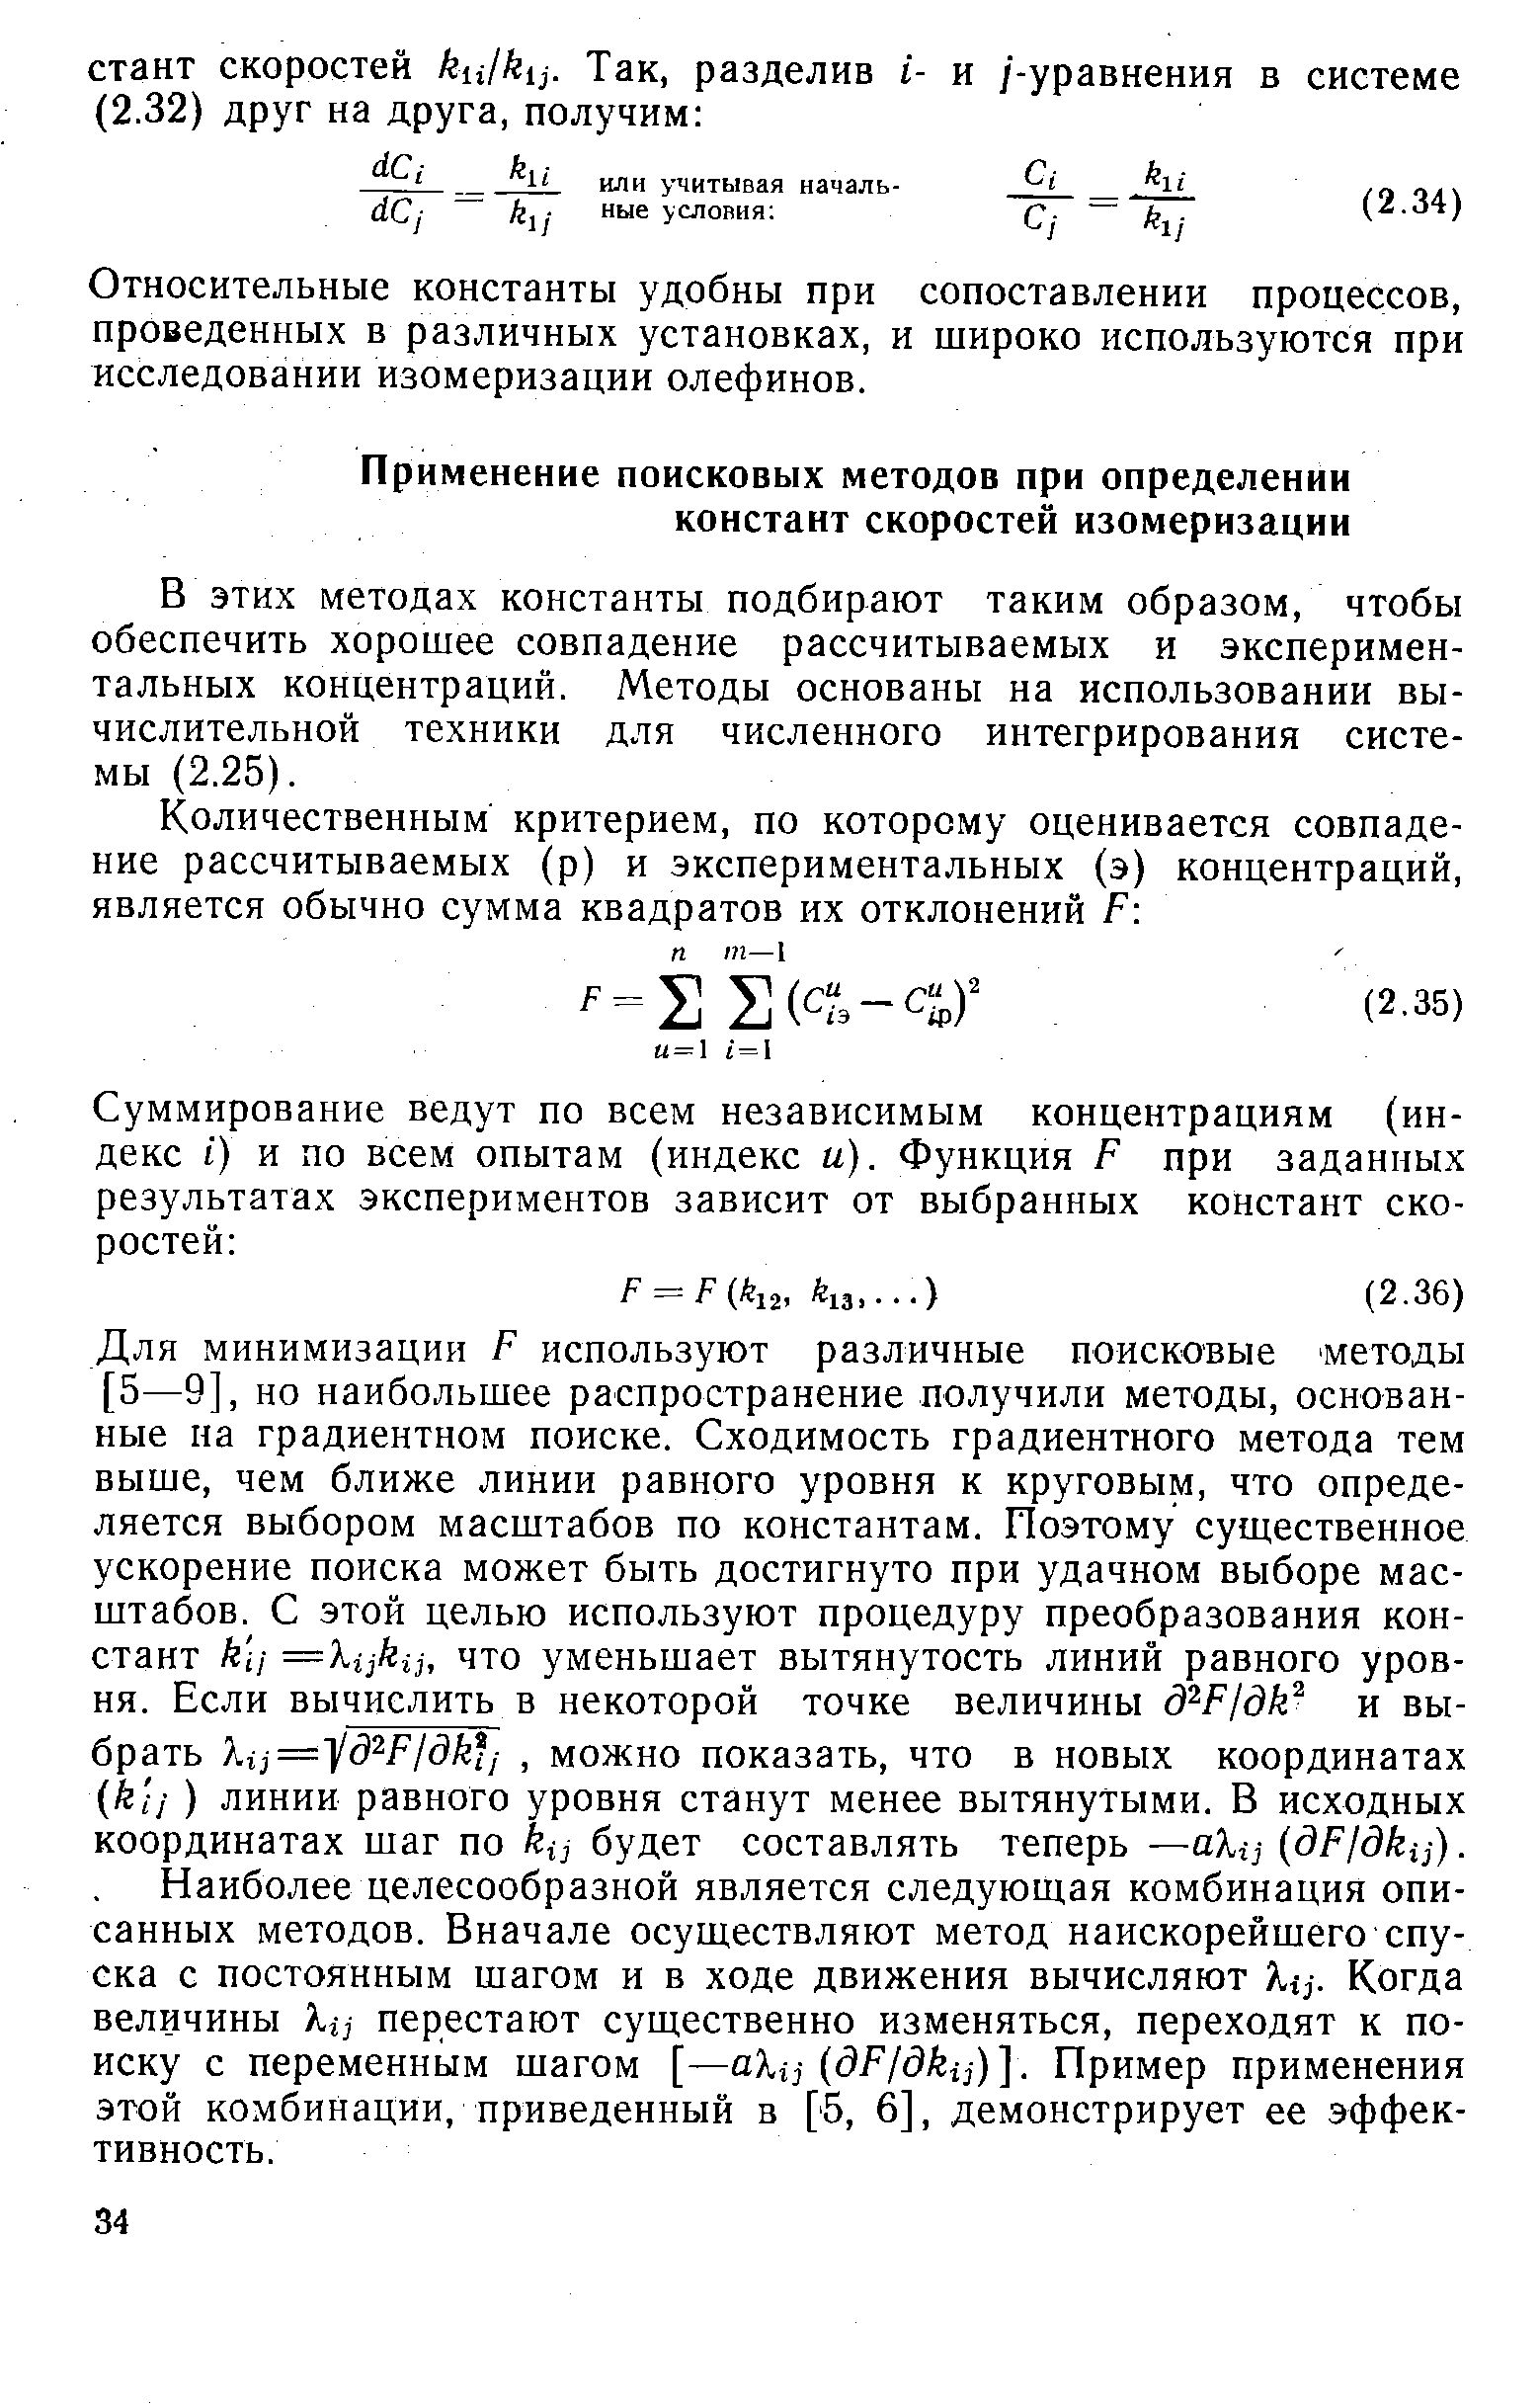 В этих методах константы подбирают таким образом, чтобы обеспечить хорошее совпадение рассчитываемых и экспериментальных концентраций. Методы основаны на использовании вычислительной техники для численного интегрирования системы (2.25).